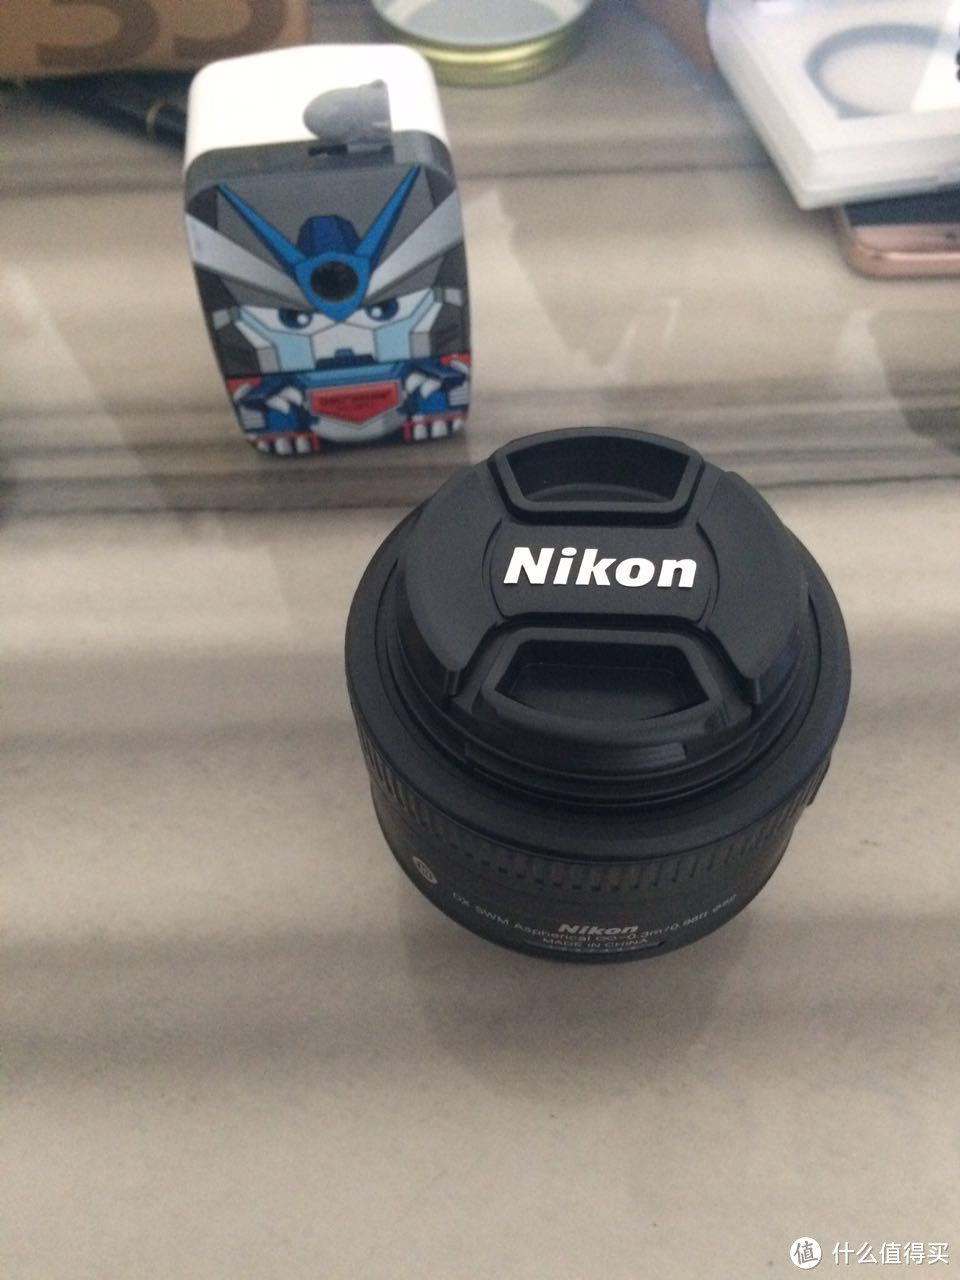 #原创新人#双11入手Nikon 尼康 35/1.8G镜头 速度到货 开箱晒物